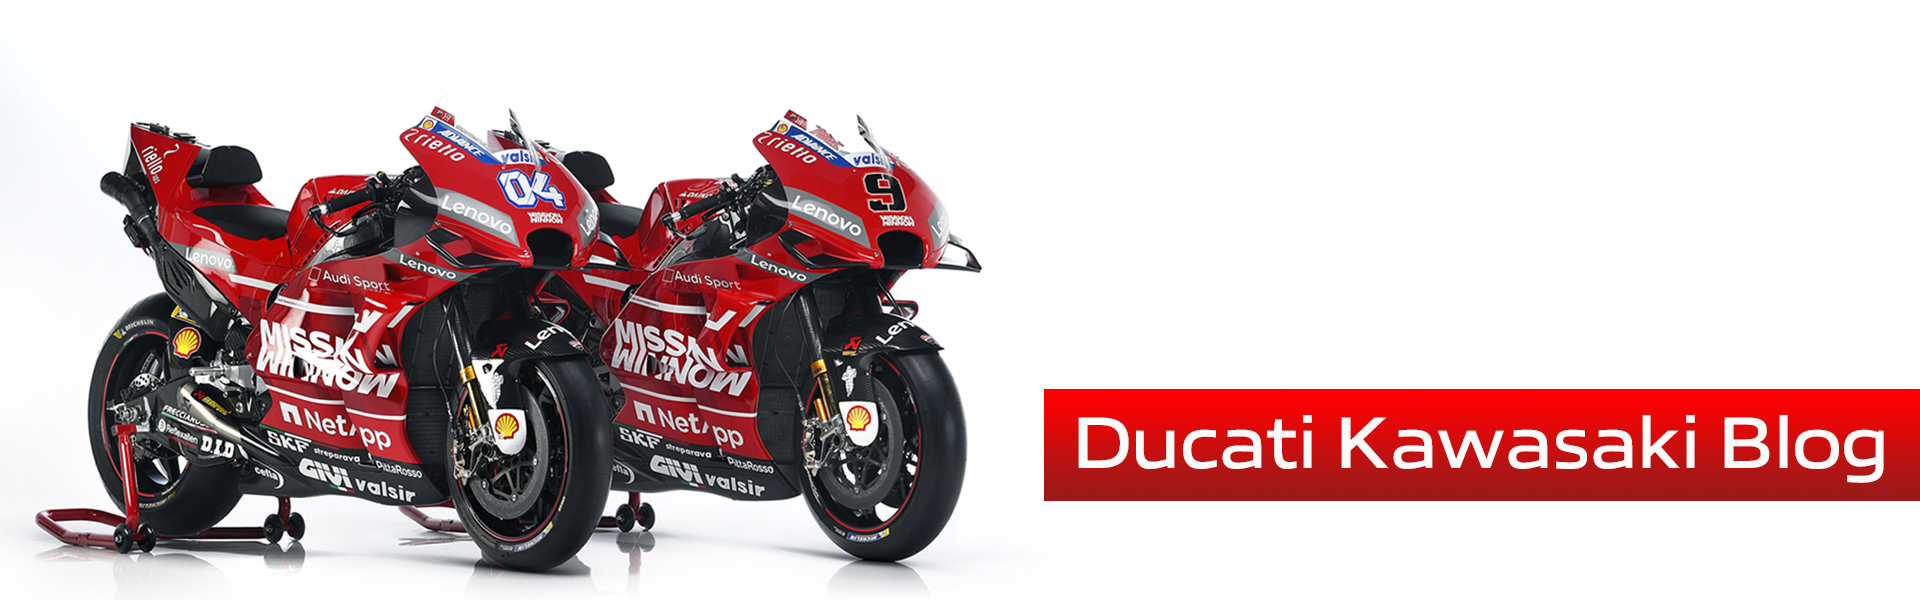 Ducati Kawasaki Blog